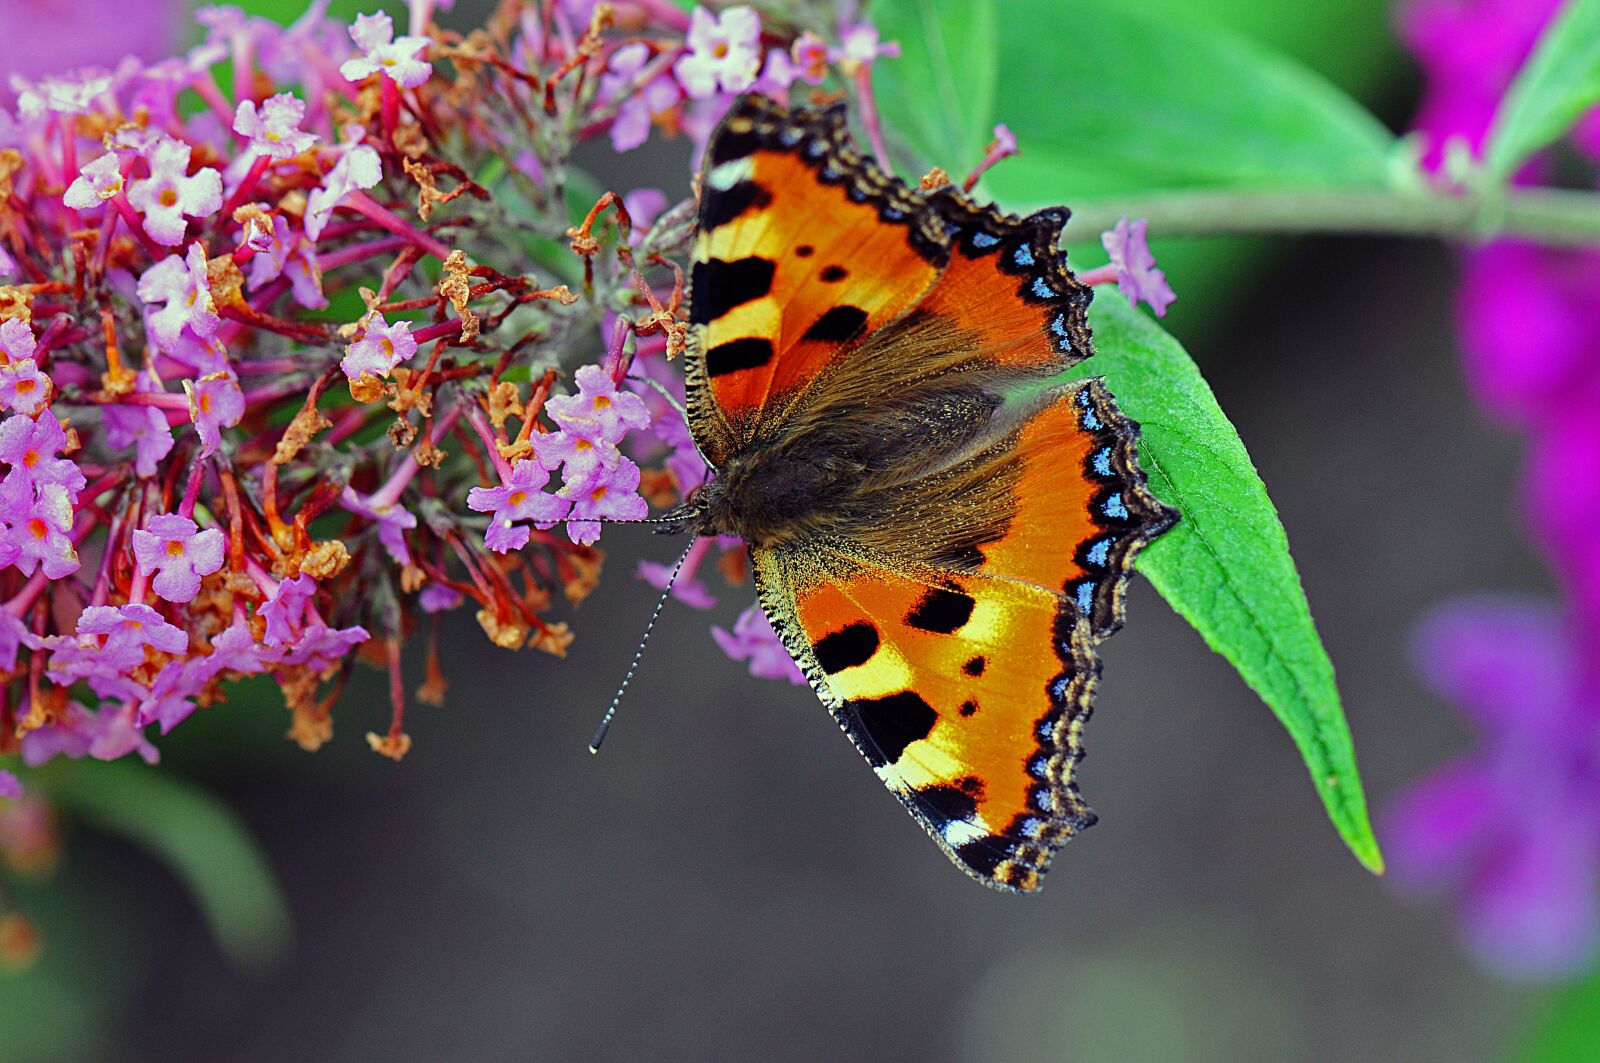 Nikon D300 sample photo. Little fox, butterflies, butterfly photography